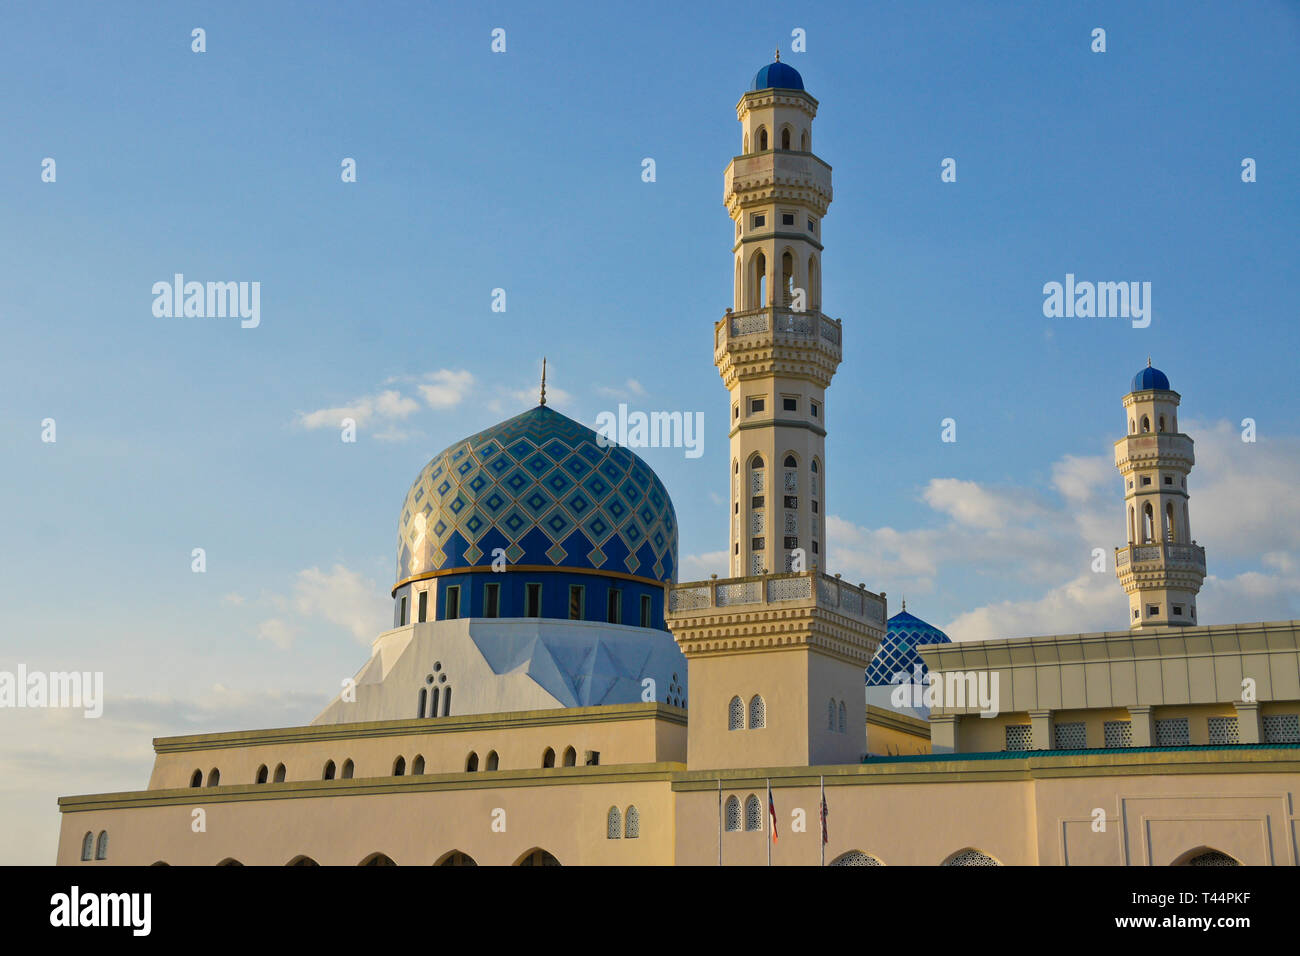 Mosquée de la ville, sur la baie de Likas Kota Kinabalu, Sabah (Bornéo), Malaisie Banque D'Images